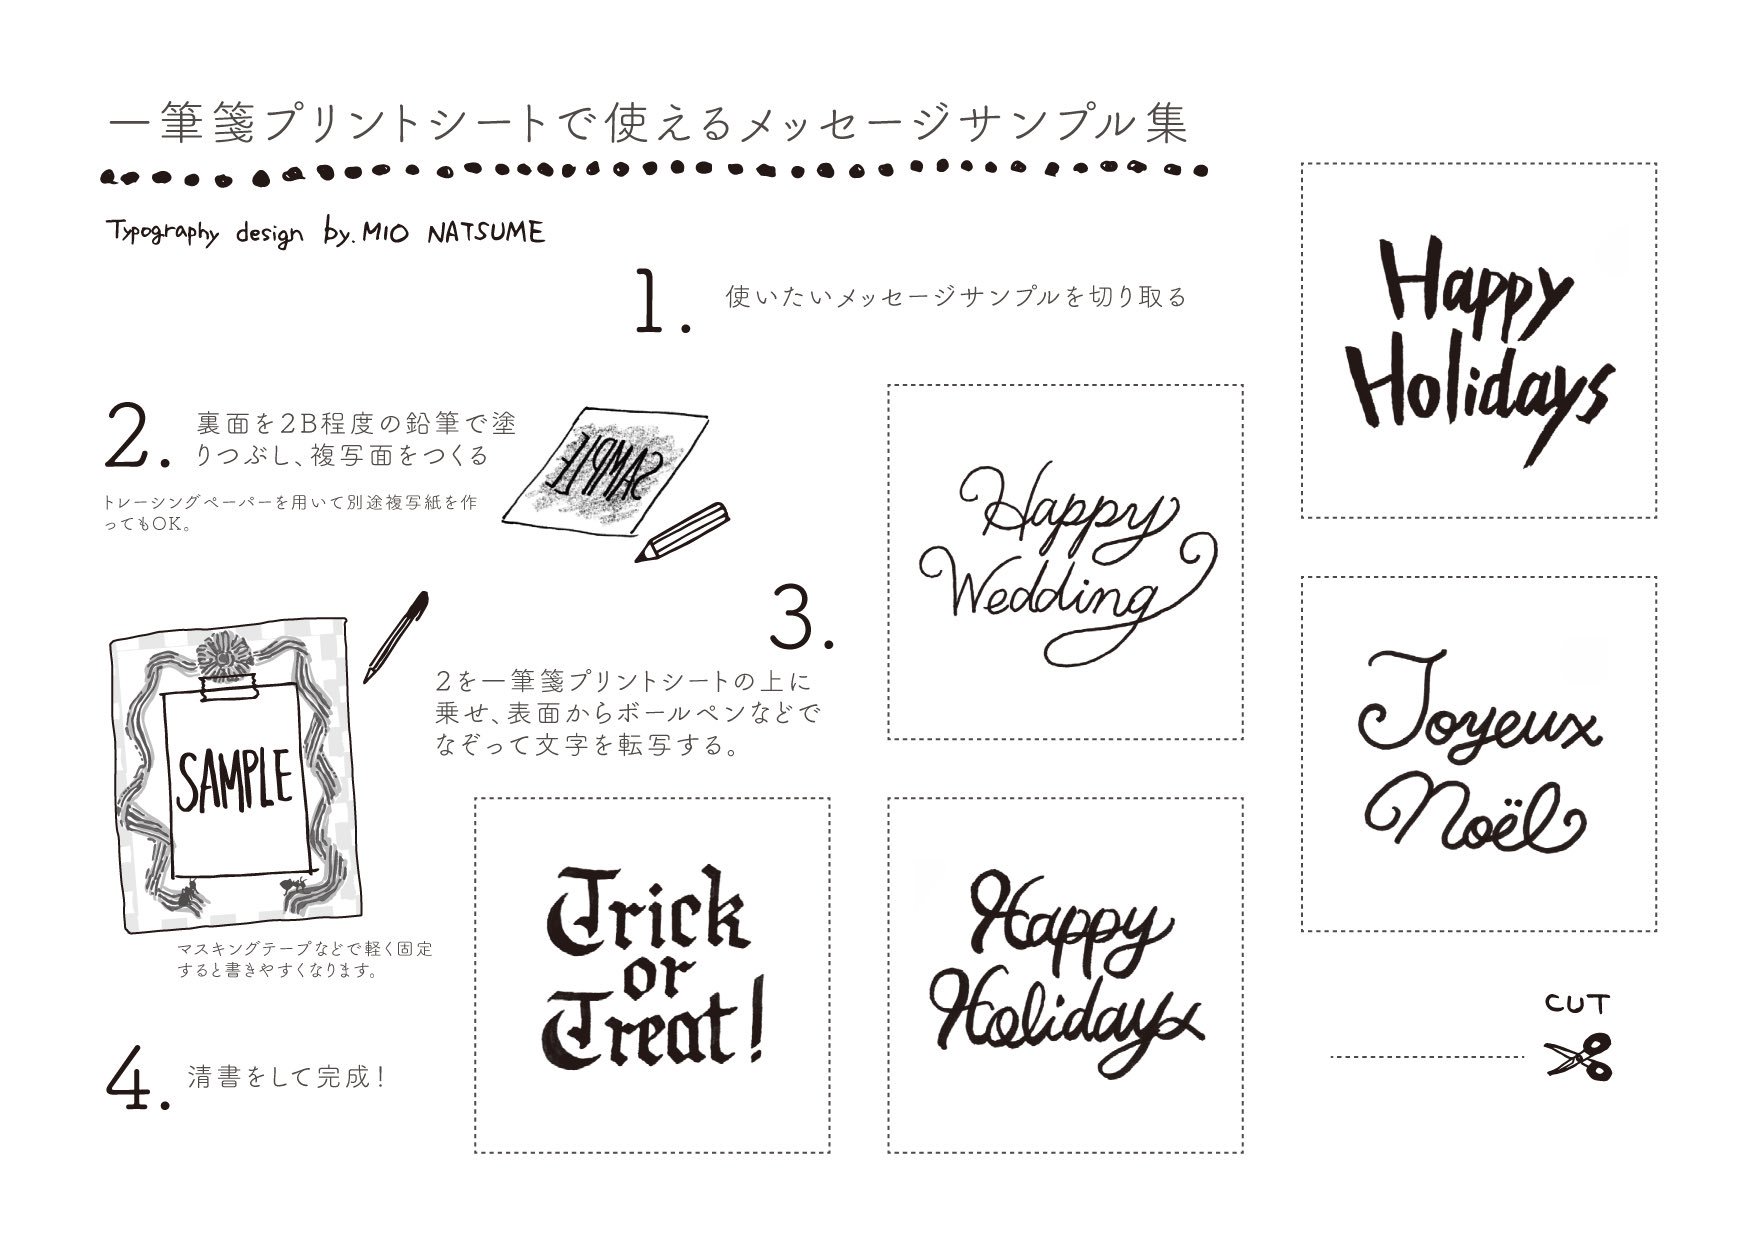 ナツメミオ あわい 間 いよいよクリスマスが近づいてきましたね 手書き文字や 簡単な季節のイラストの描き方を こちらで記事にして頂いております よろしければご覧ください 応用編 可愛い文字の書き方講座 イラスト付き 手作りメッセージカード